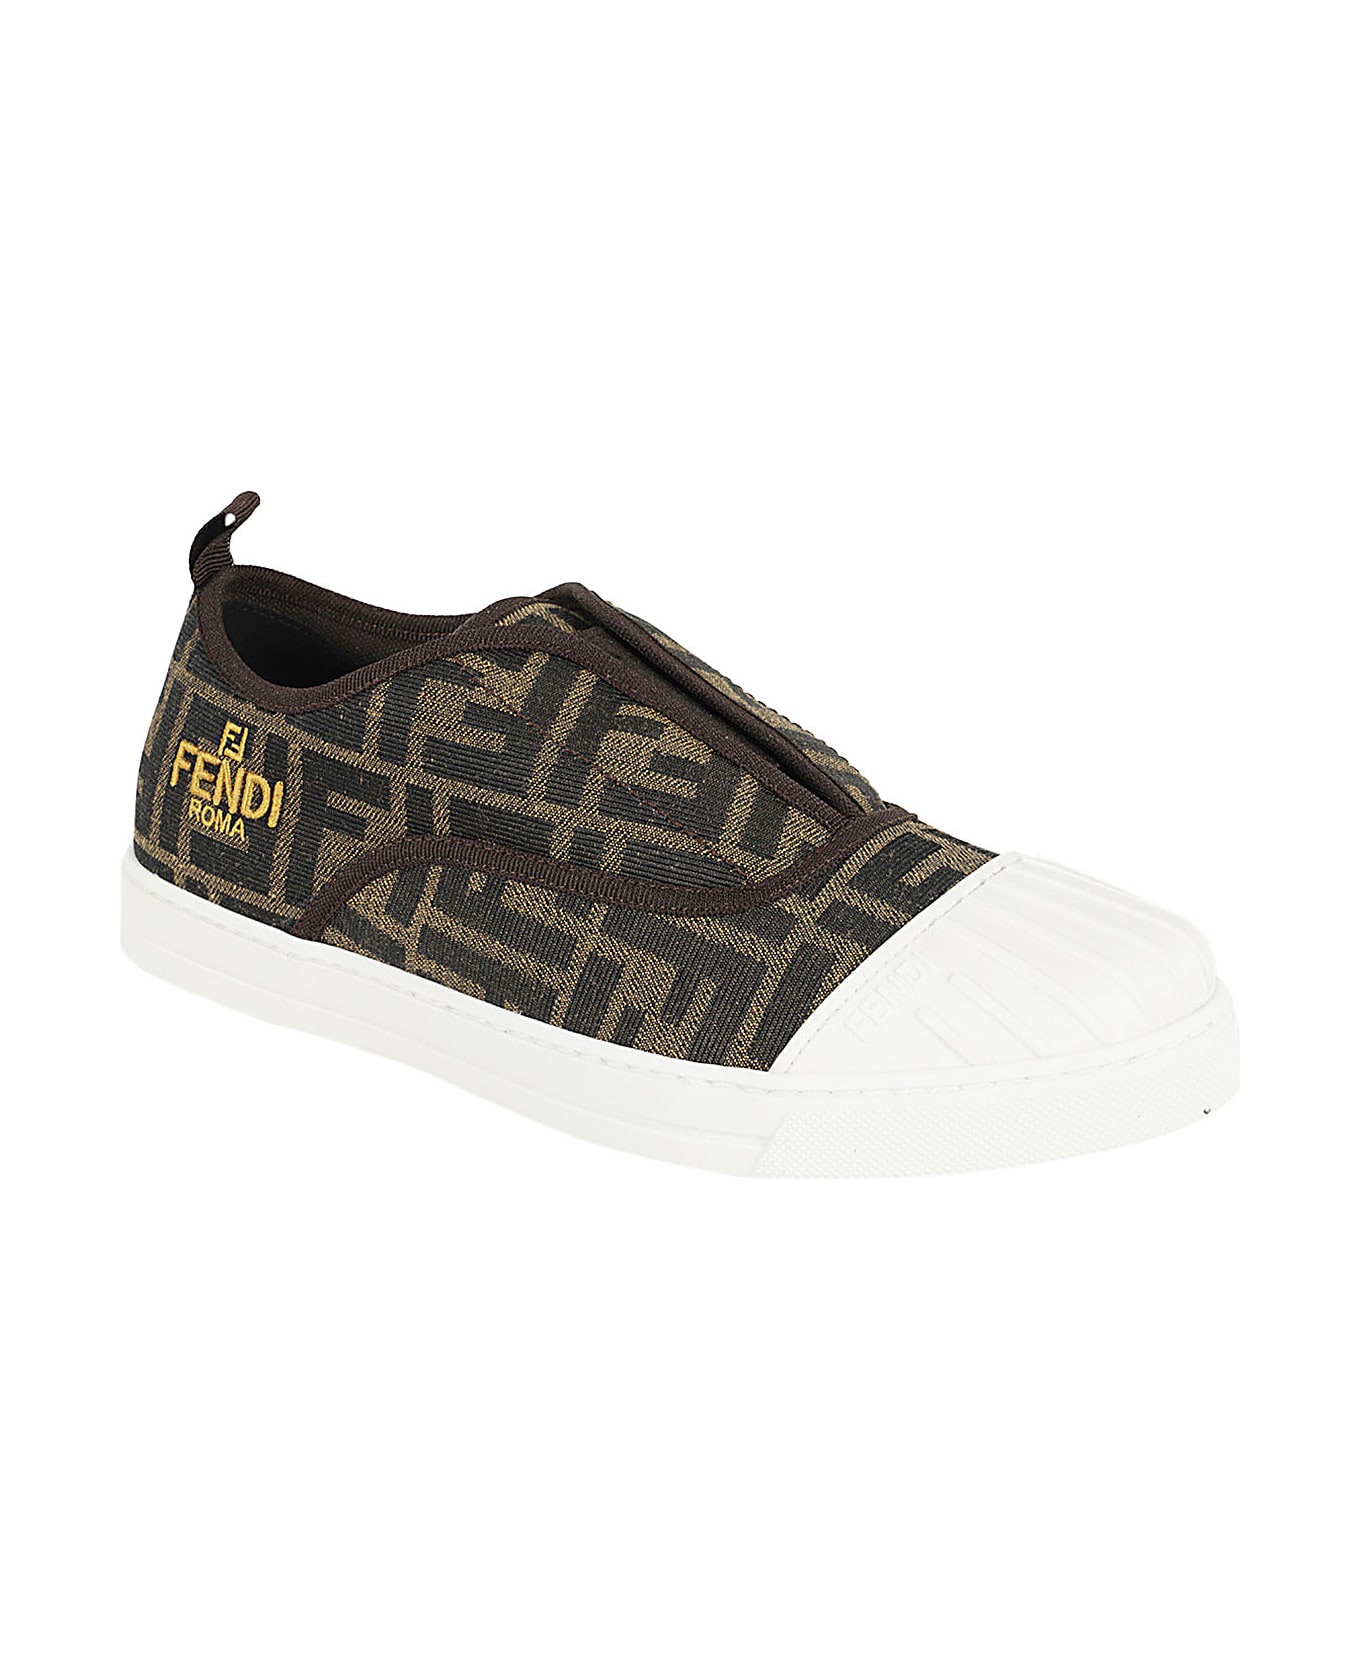 Fendi Sneaker - Vans Style 36 Mens Skate BMX Shoes Port Royale True White